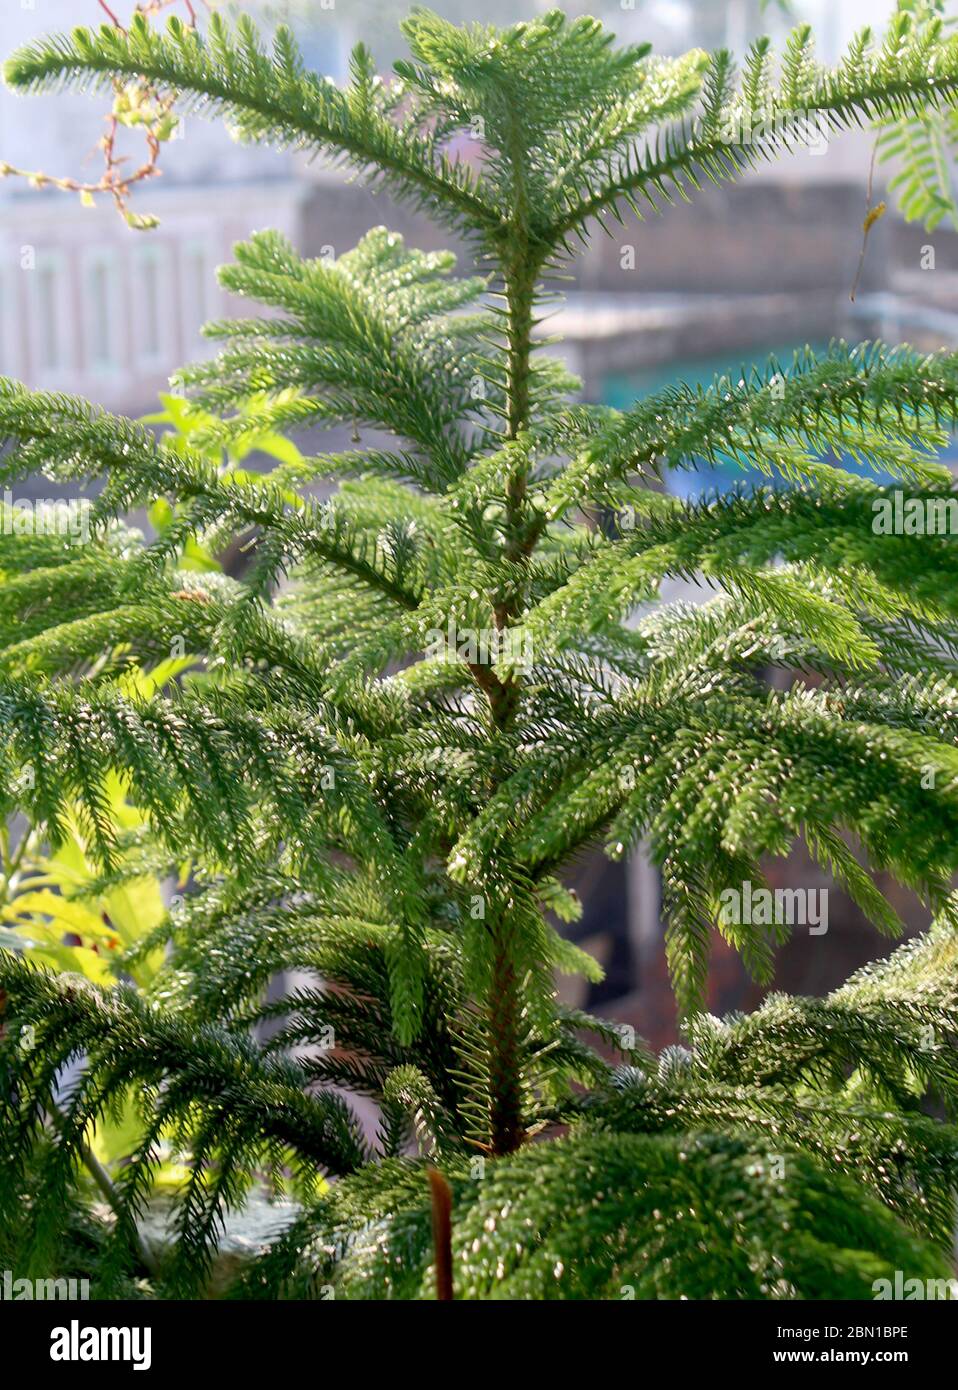 Arbre de Noël, Araucaria heterophylla, pin de l'île Norfolk, implique la croissance naturelle dans un jardin biologique. Banque D'Images